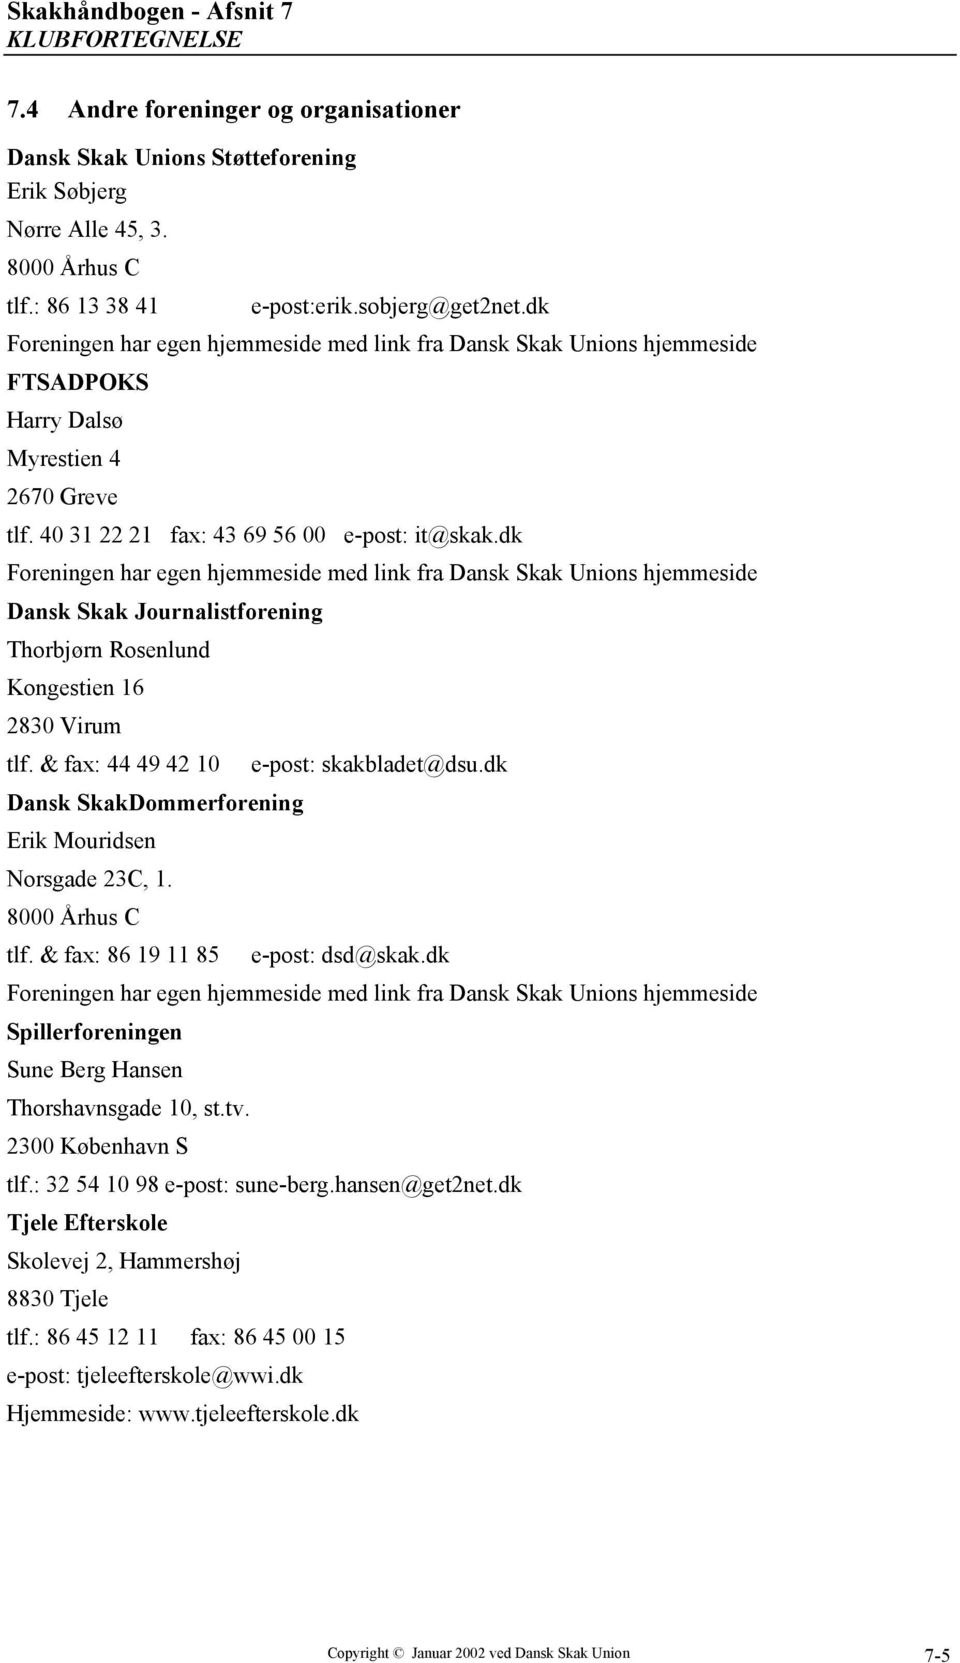 Skakhåndbogen - Afsnit 7 KLUBFORTEGNELSE - PDF Gratis download